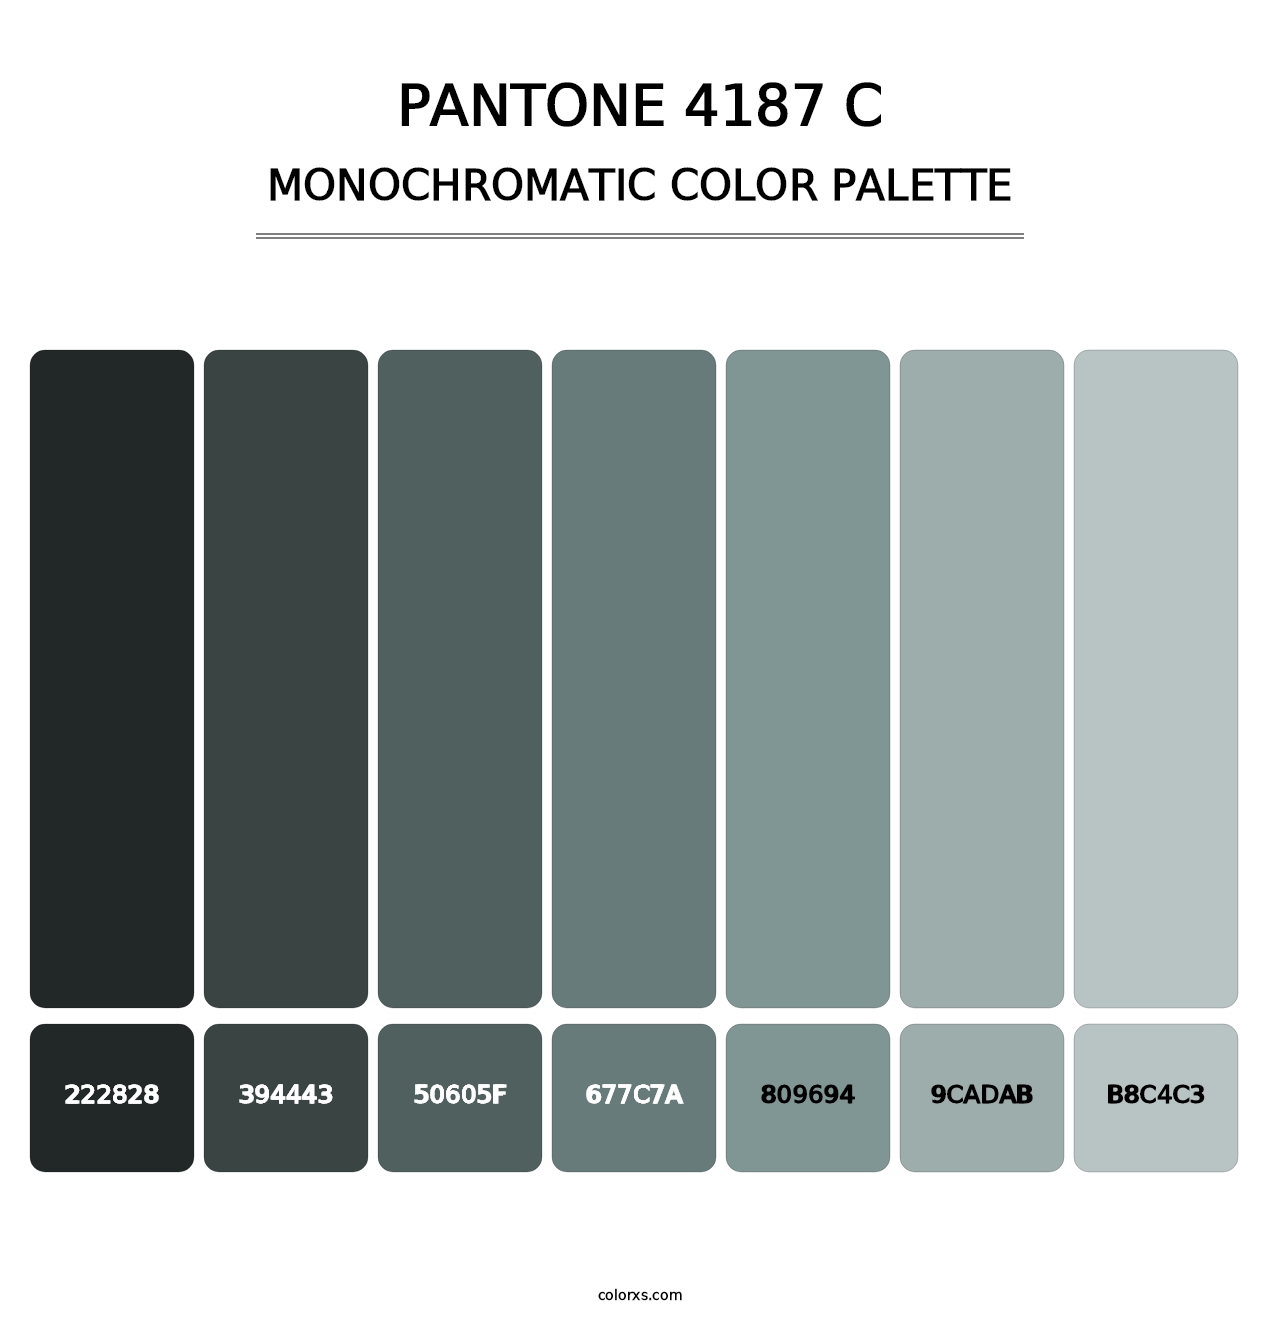 PANTONE 4187 C - Monochromatic Color Palette